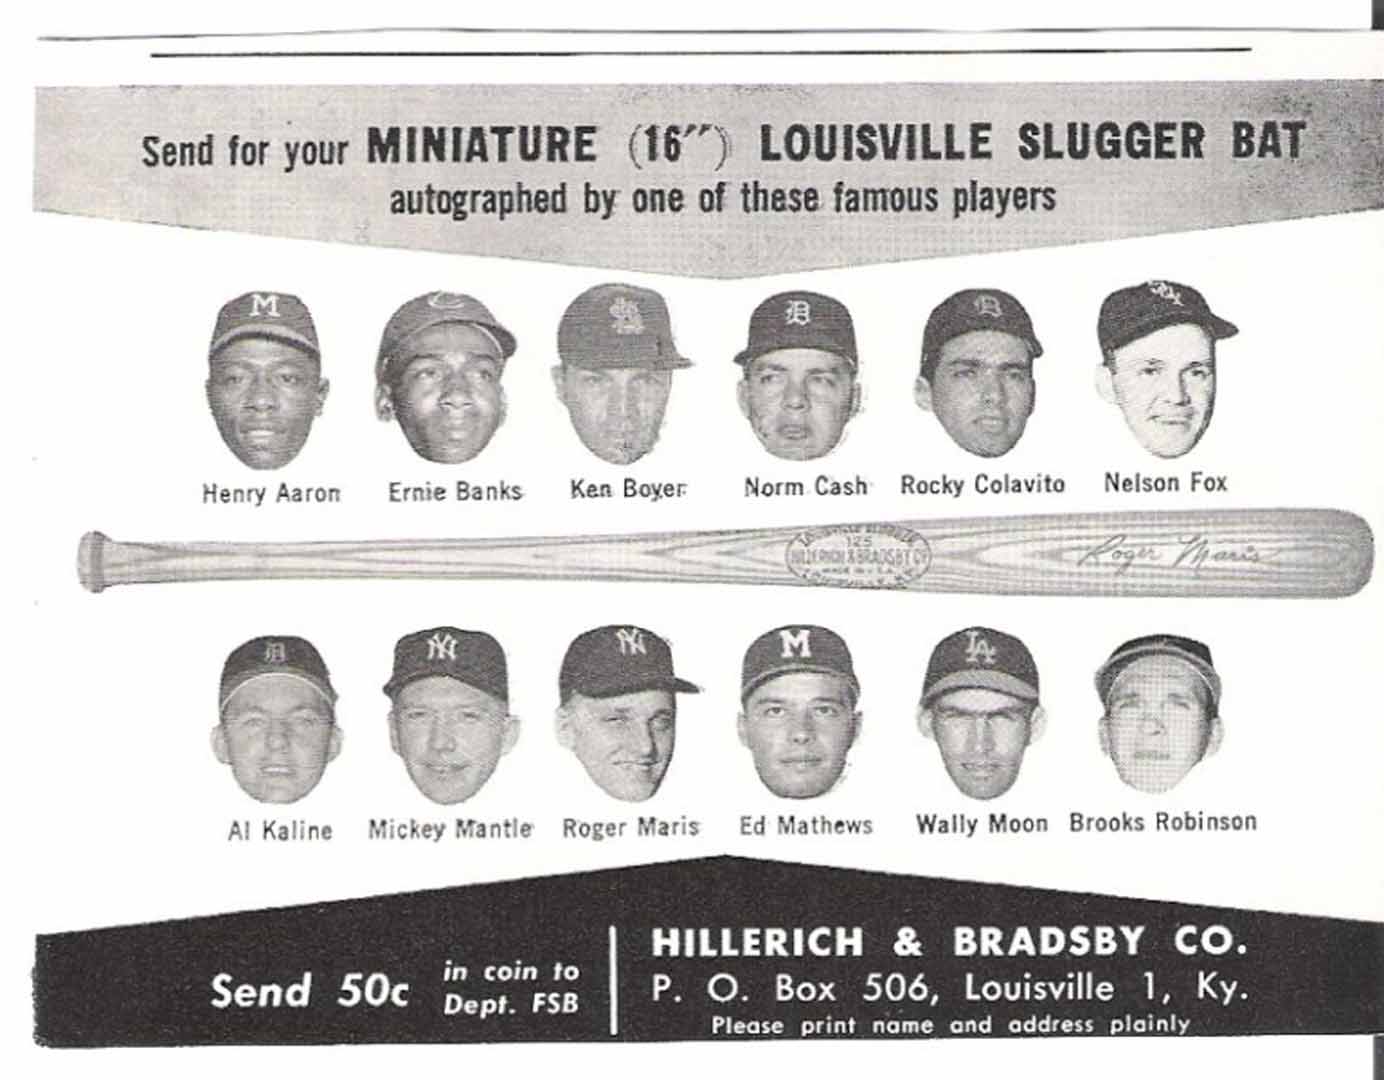 1962 Hand B famous sluggers